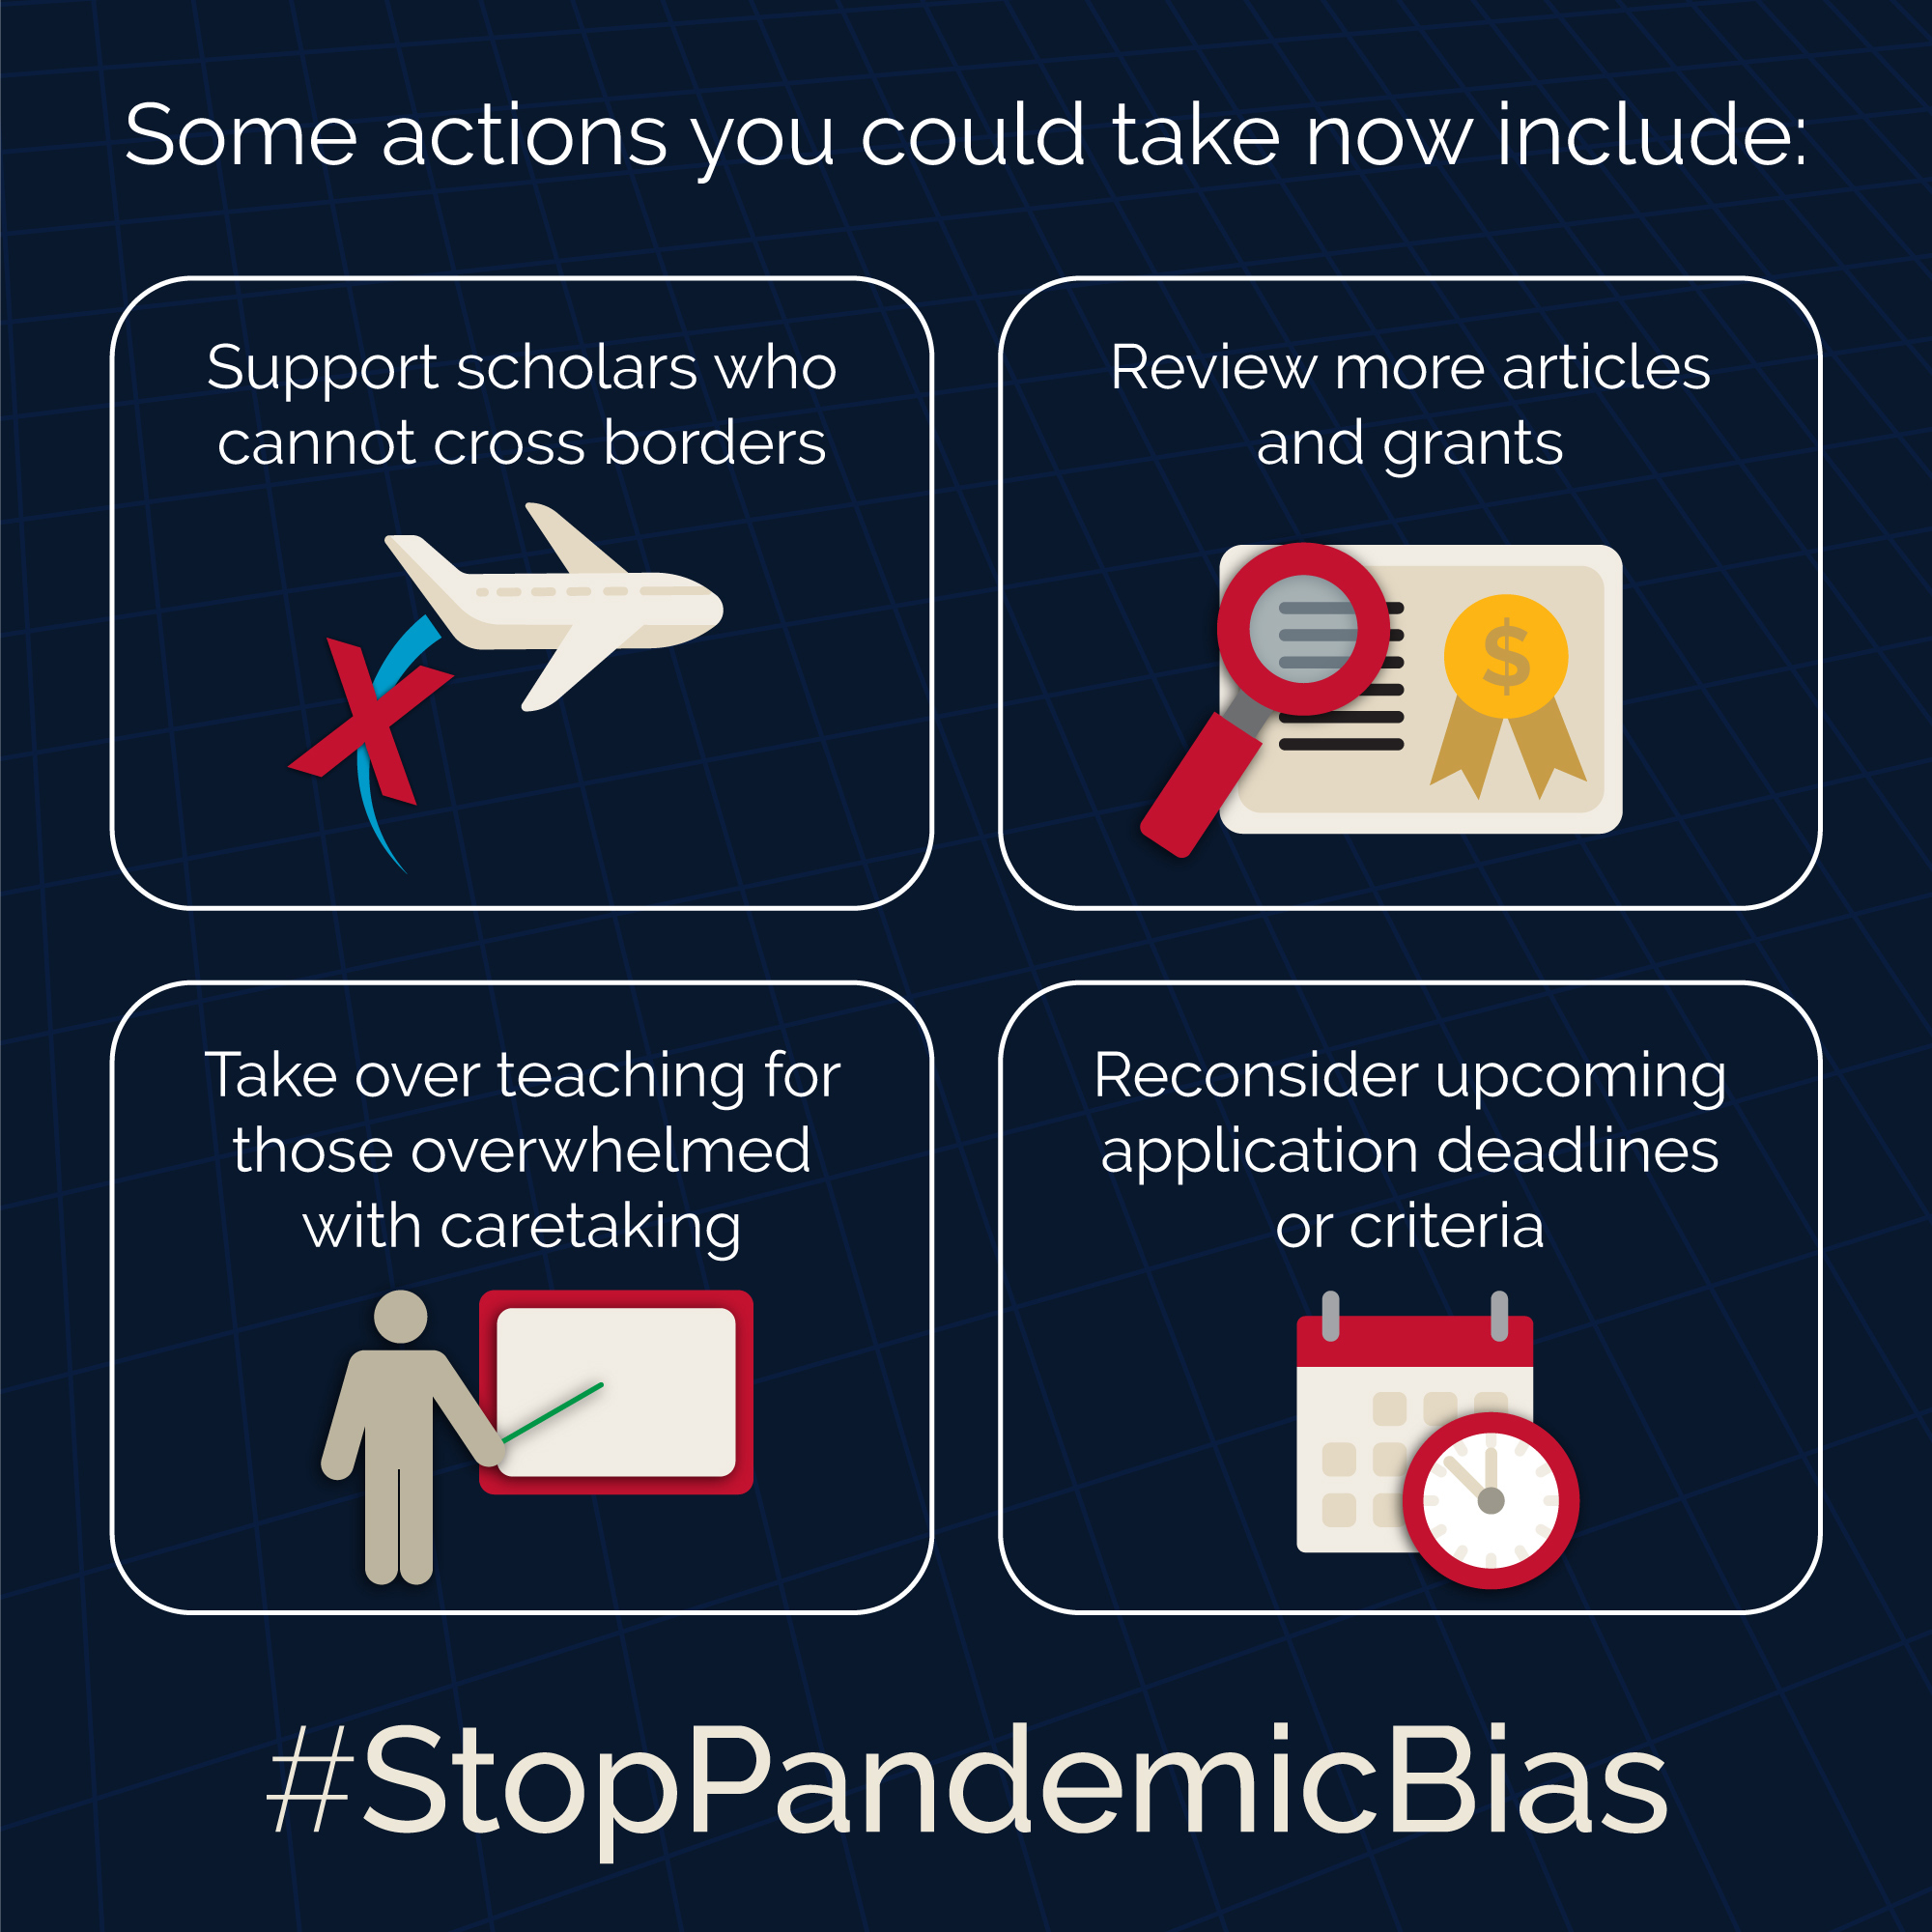 0728_stop-pandemic-bias-actions-sq.jpg